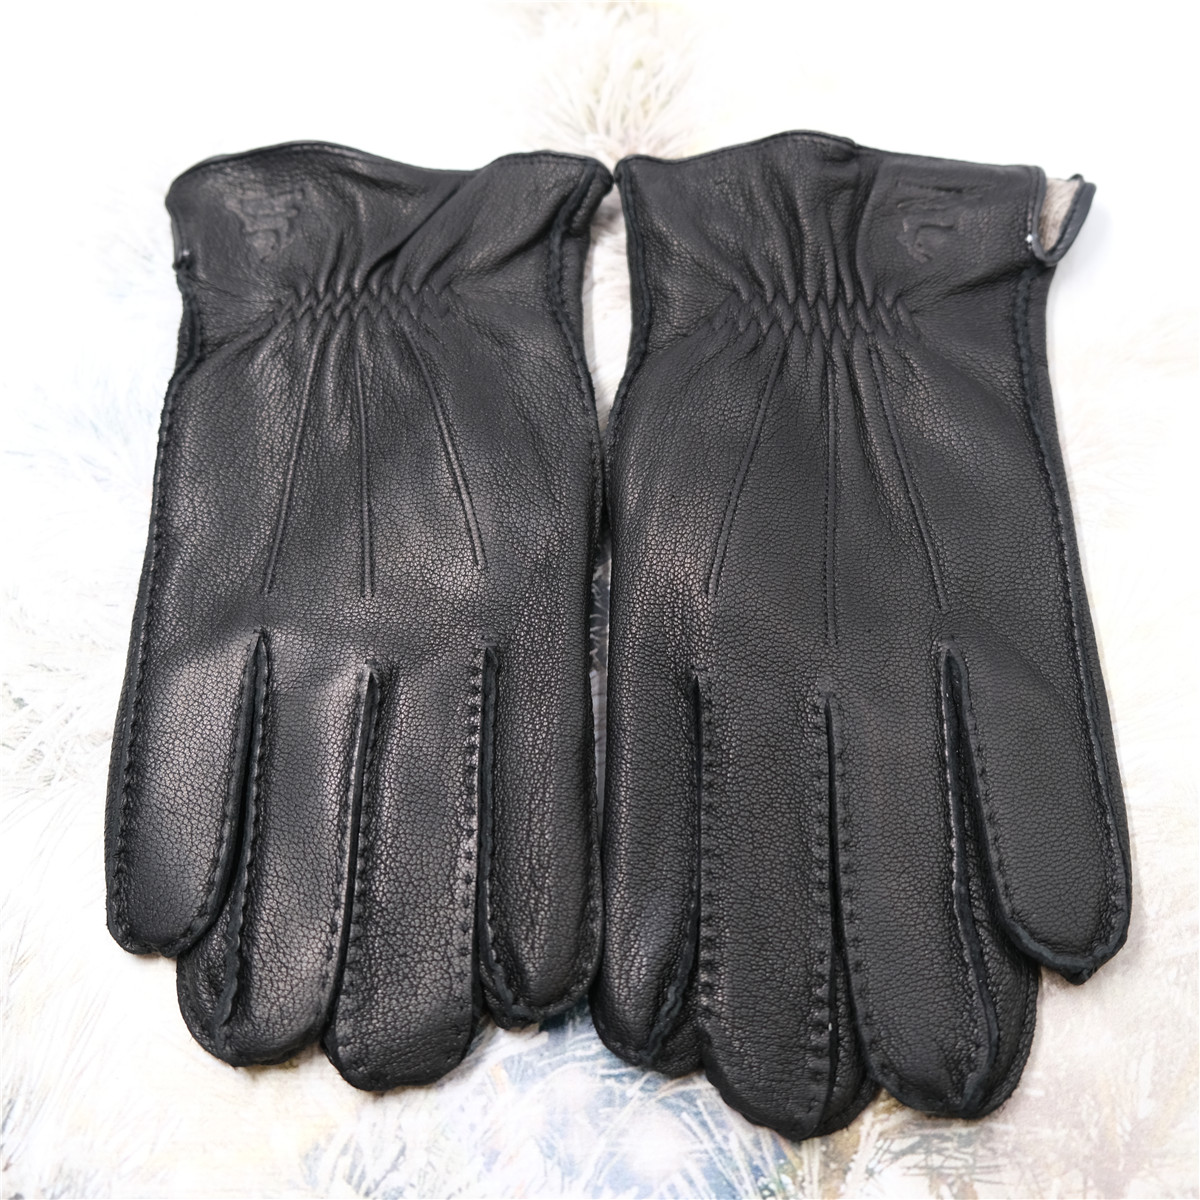  Перчатки Hammon Moda Перчатки мужские ручное шитье X-006 Perchatki124 являющийся официальным дистрибьютором в России 